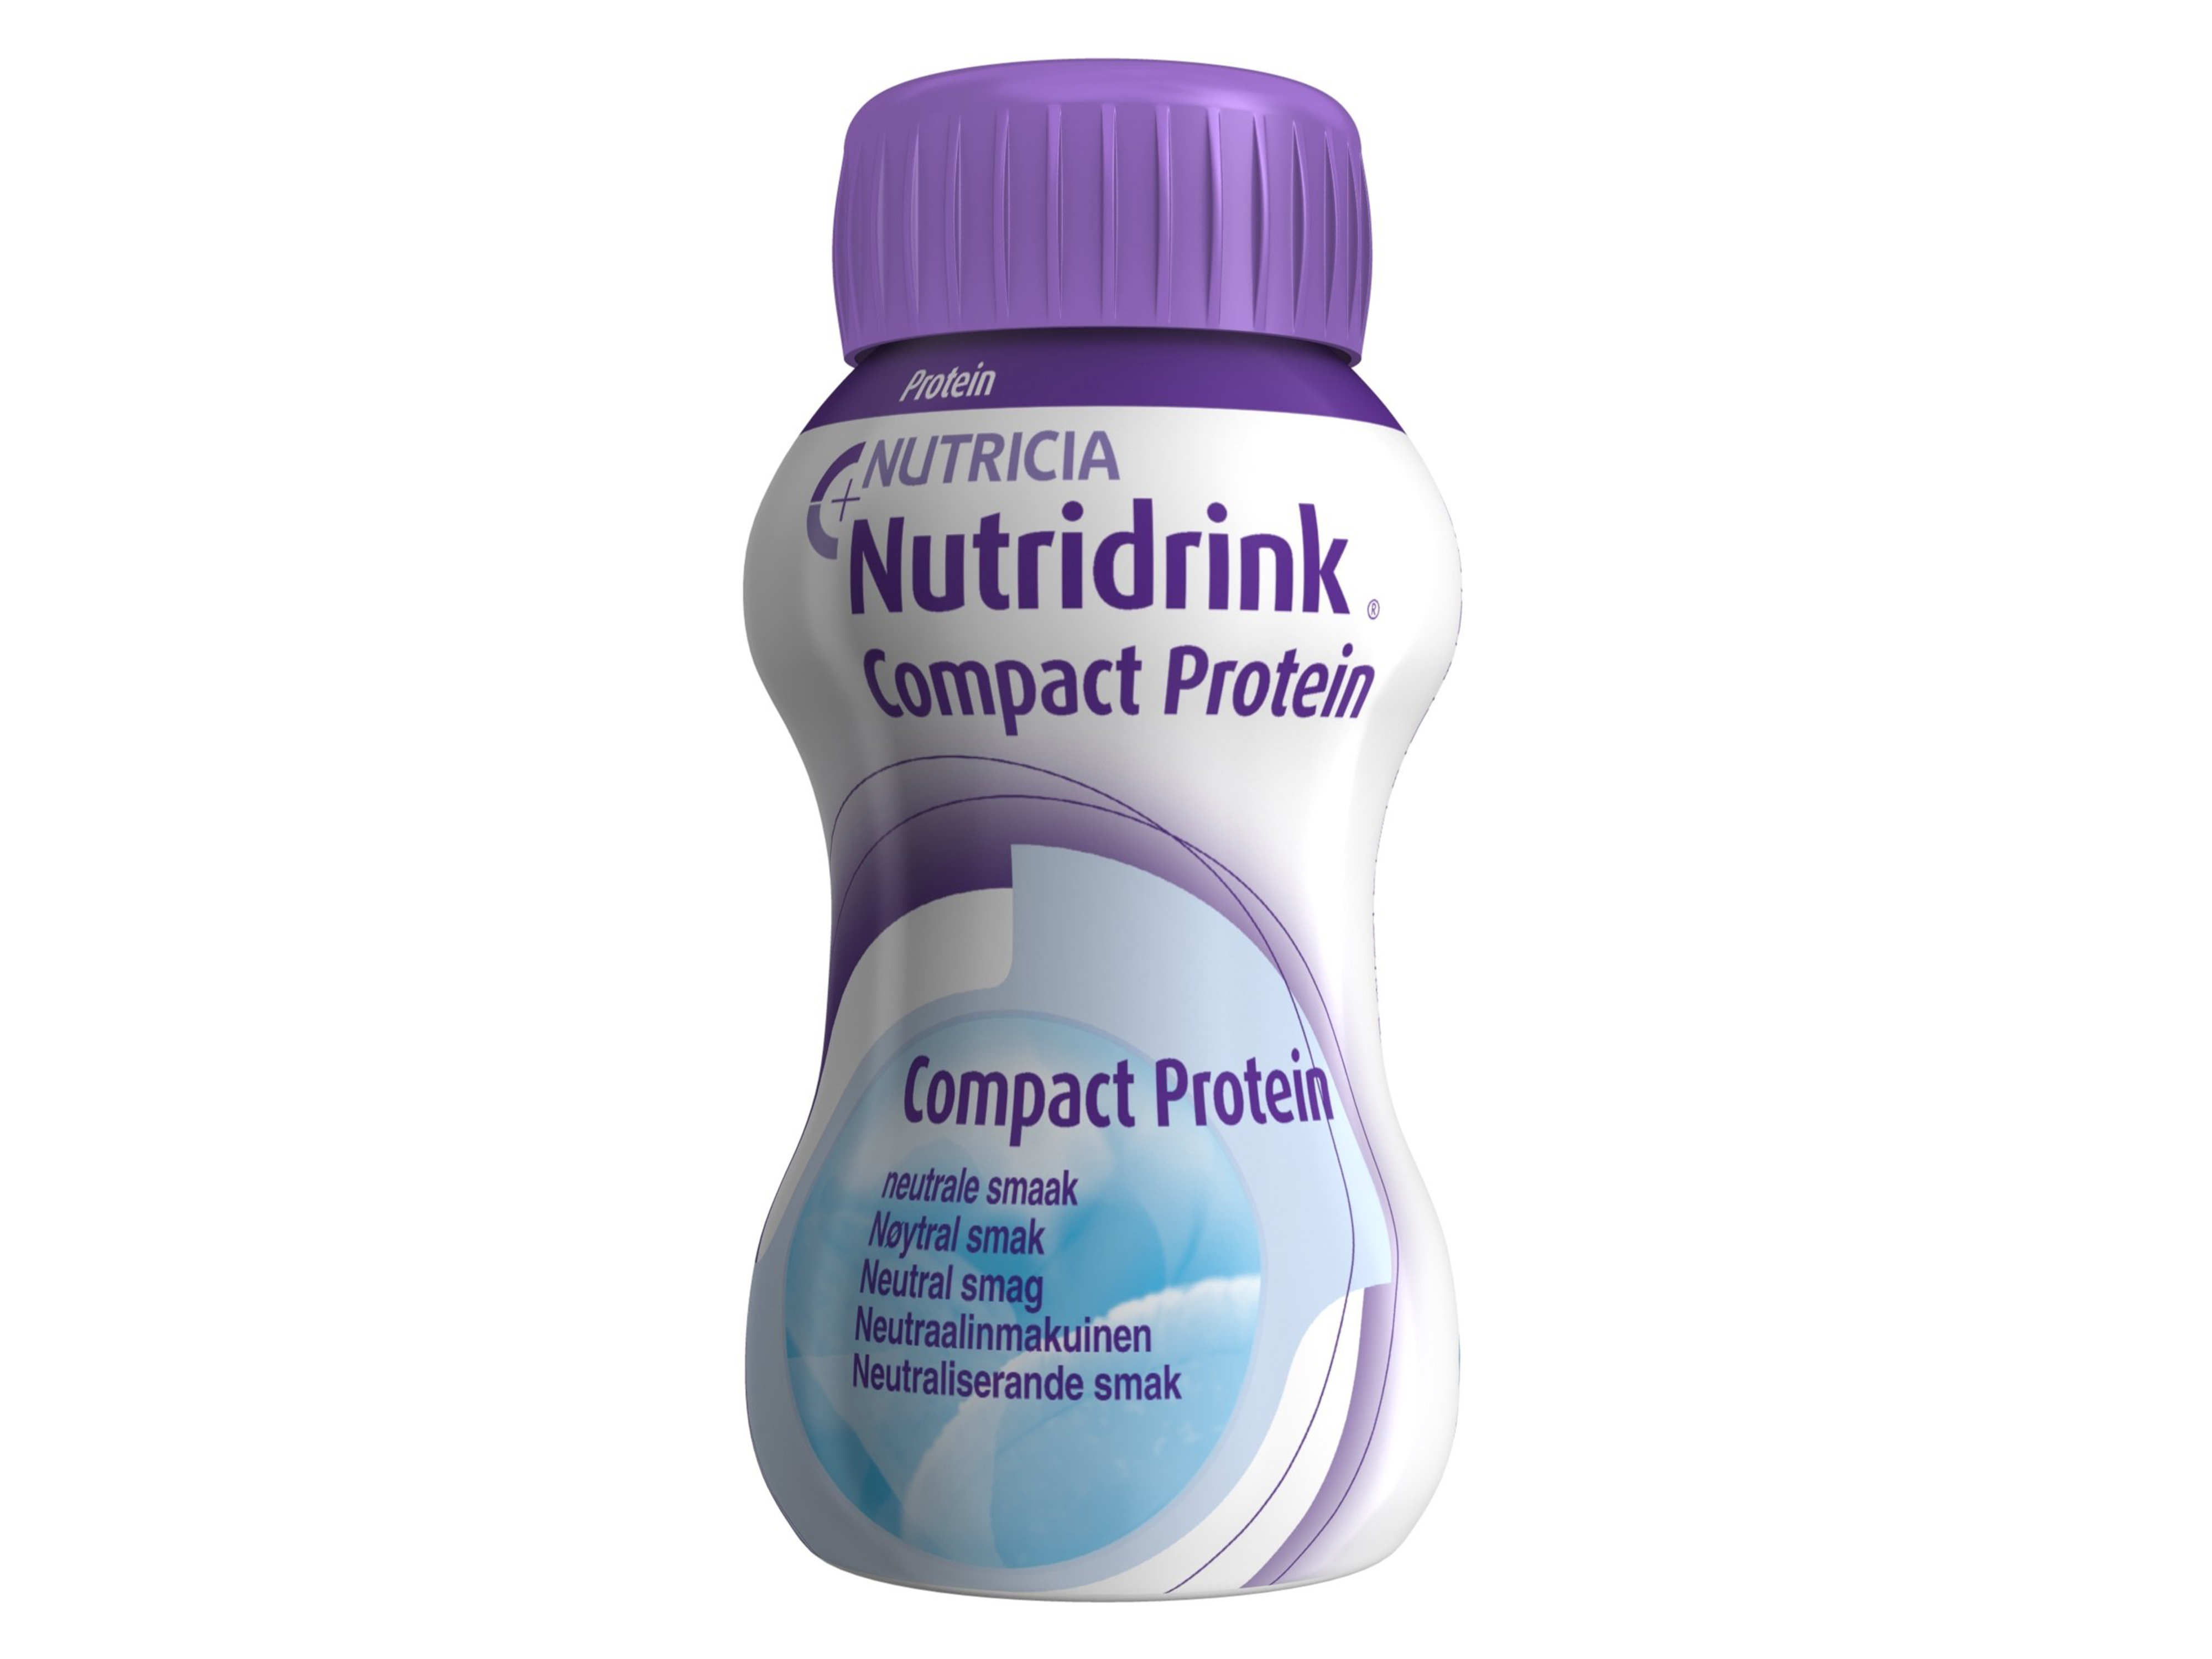 Nutridrink Compact proteinrik næringsdrikk, Nøytral, 4 x 125 ml